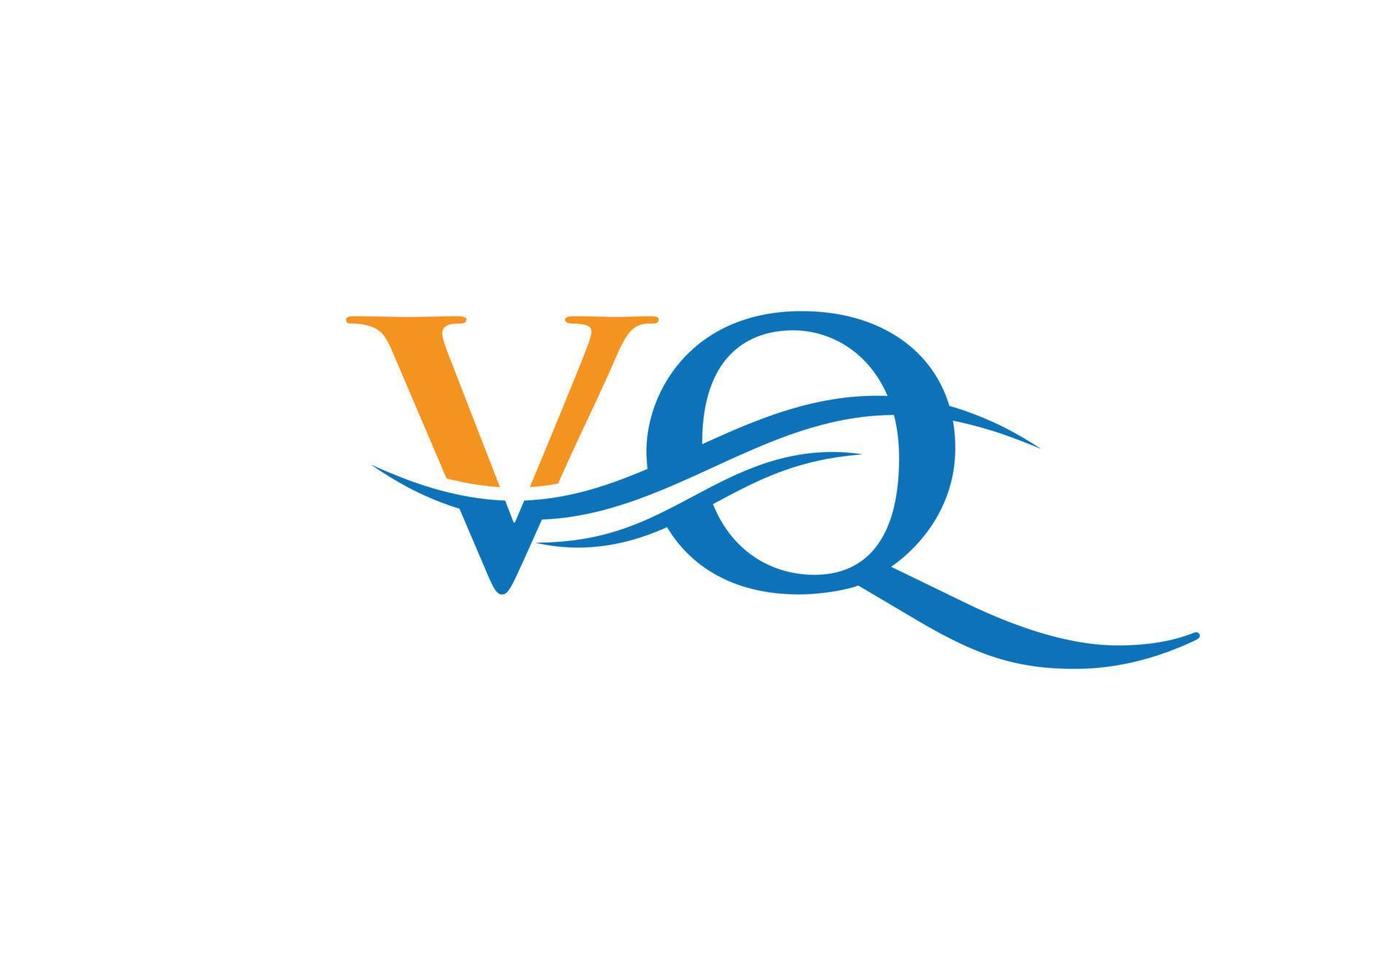 création de logo swoosh letter vq pour l'identité de l'entreprise et de l'entreprise. logo vq vague d'eau avec tendance moderne vecteur